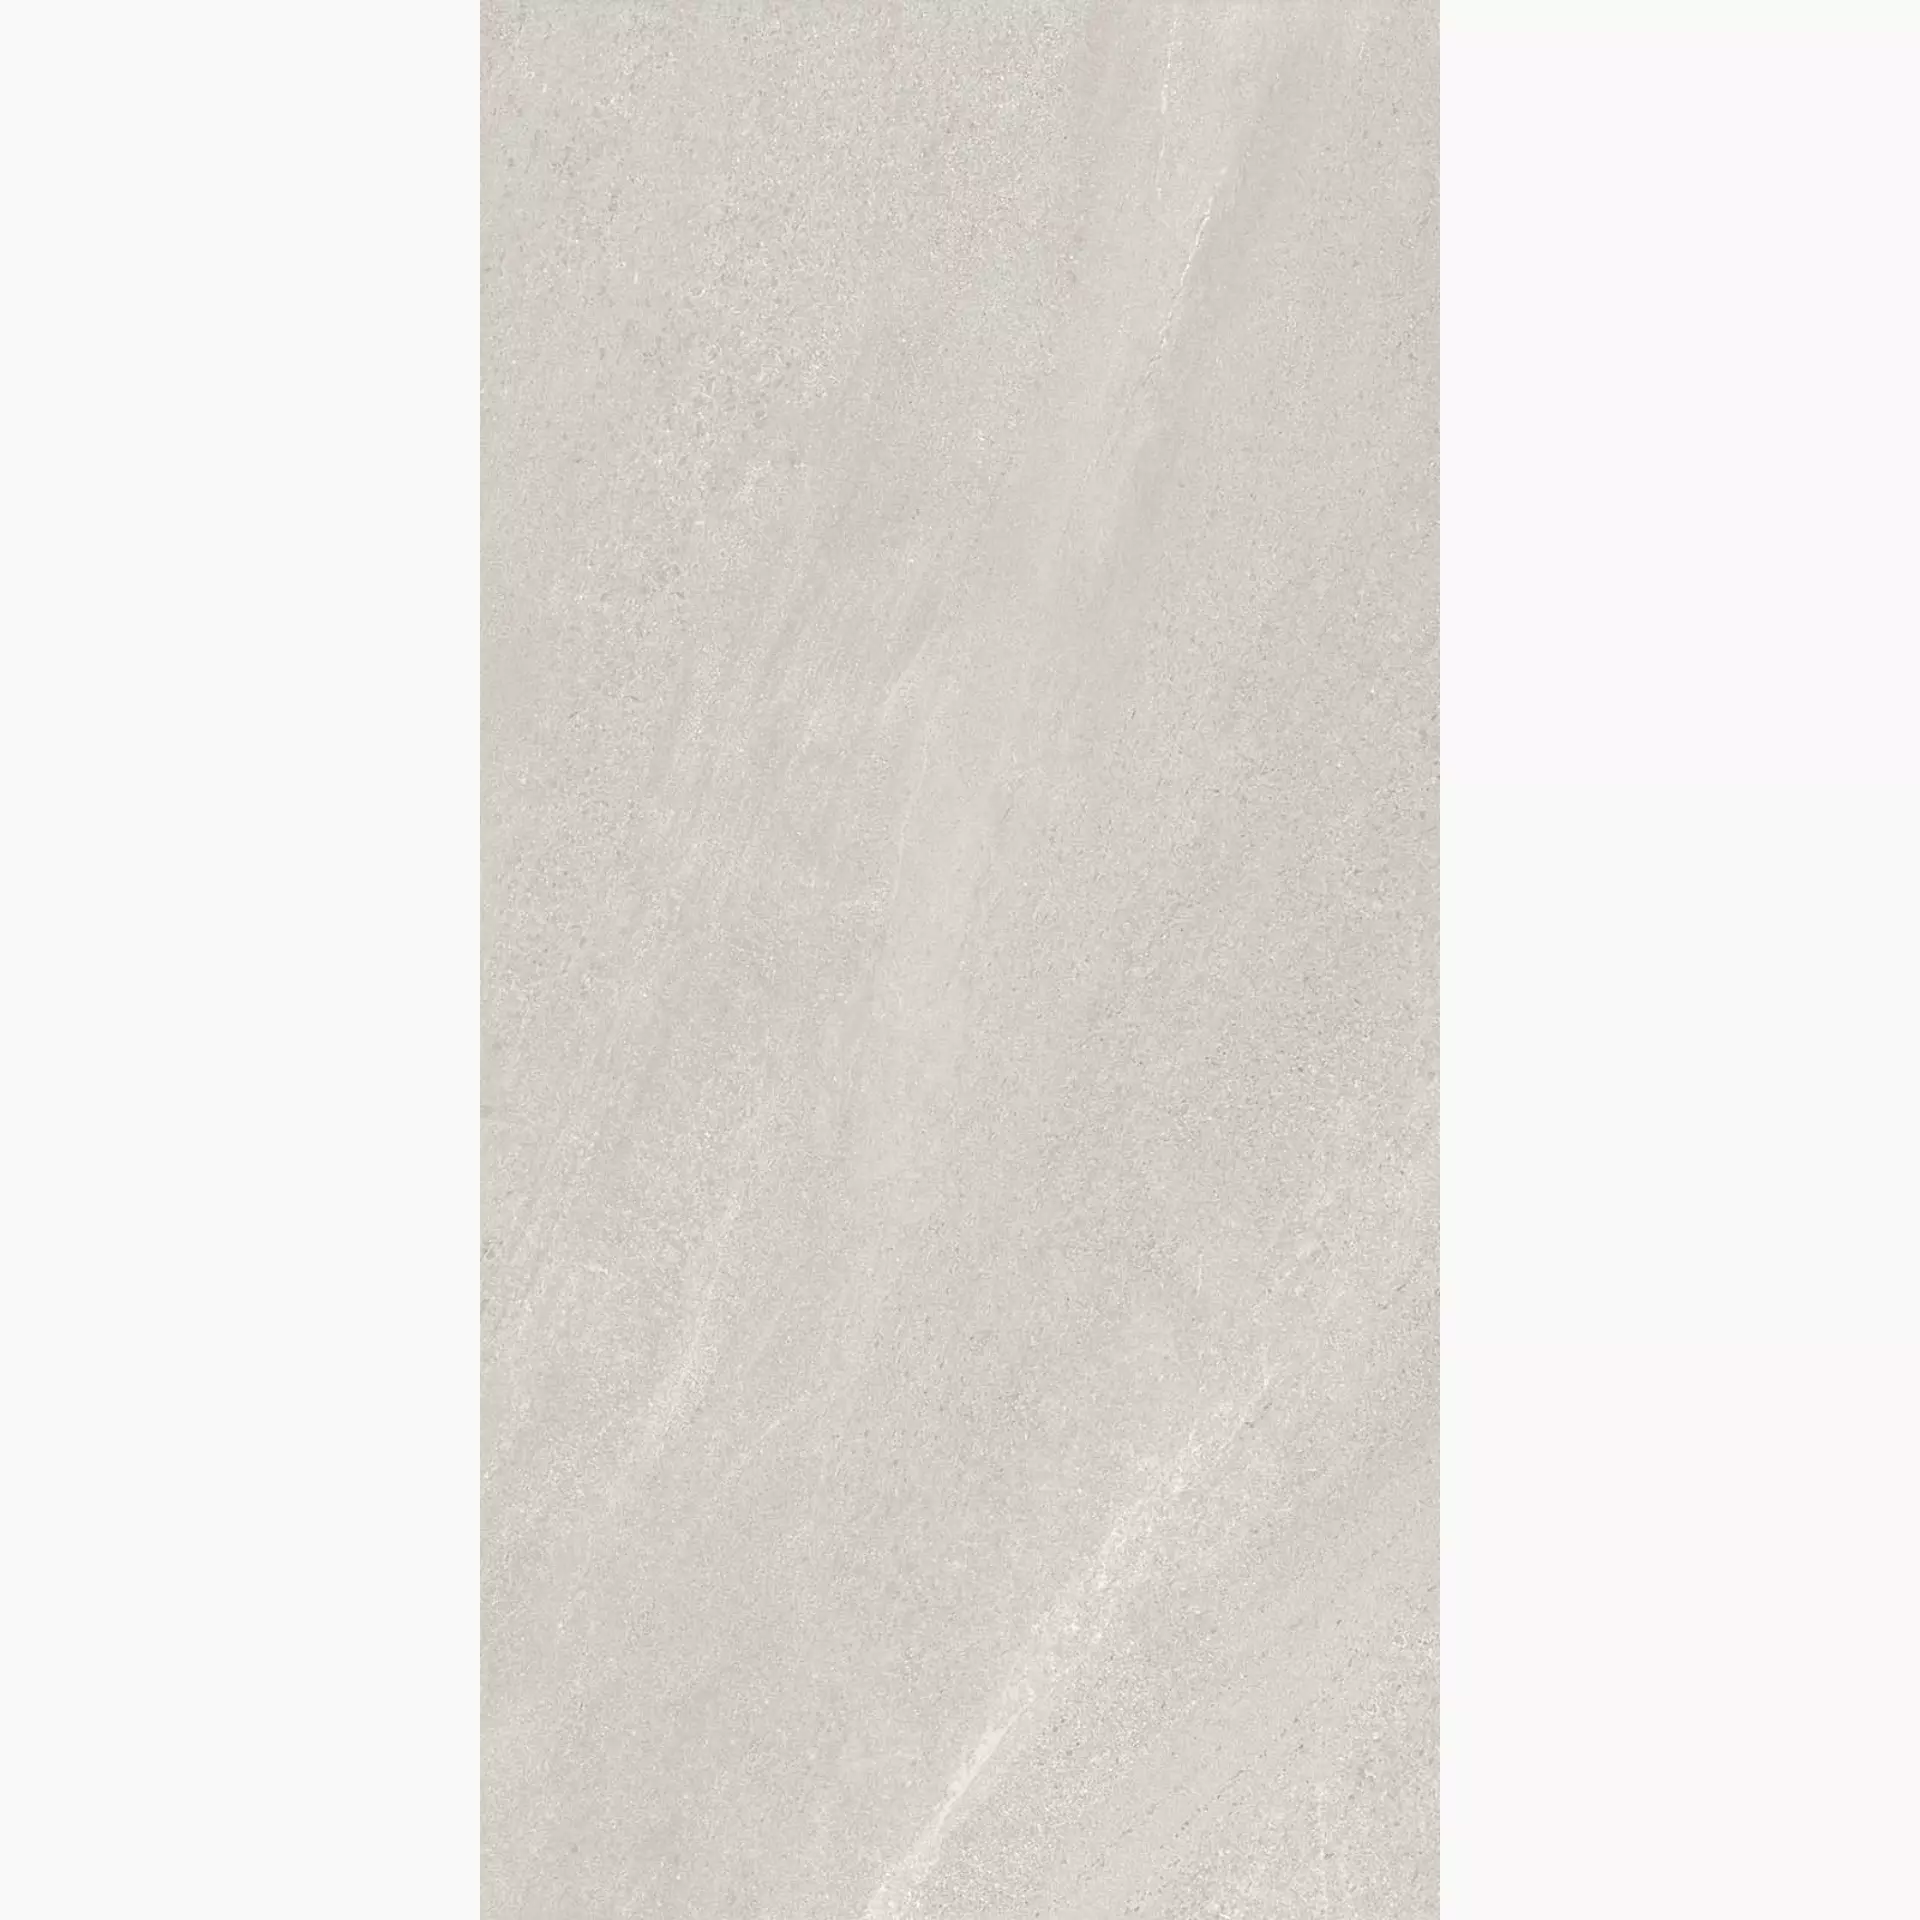 Keope Chorus White Naturale – Matt 434F3635 60x120cm rectified 9mm